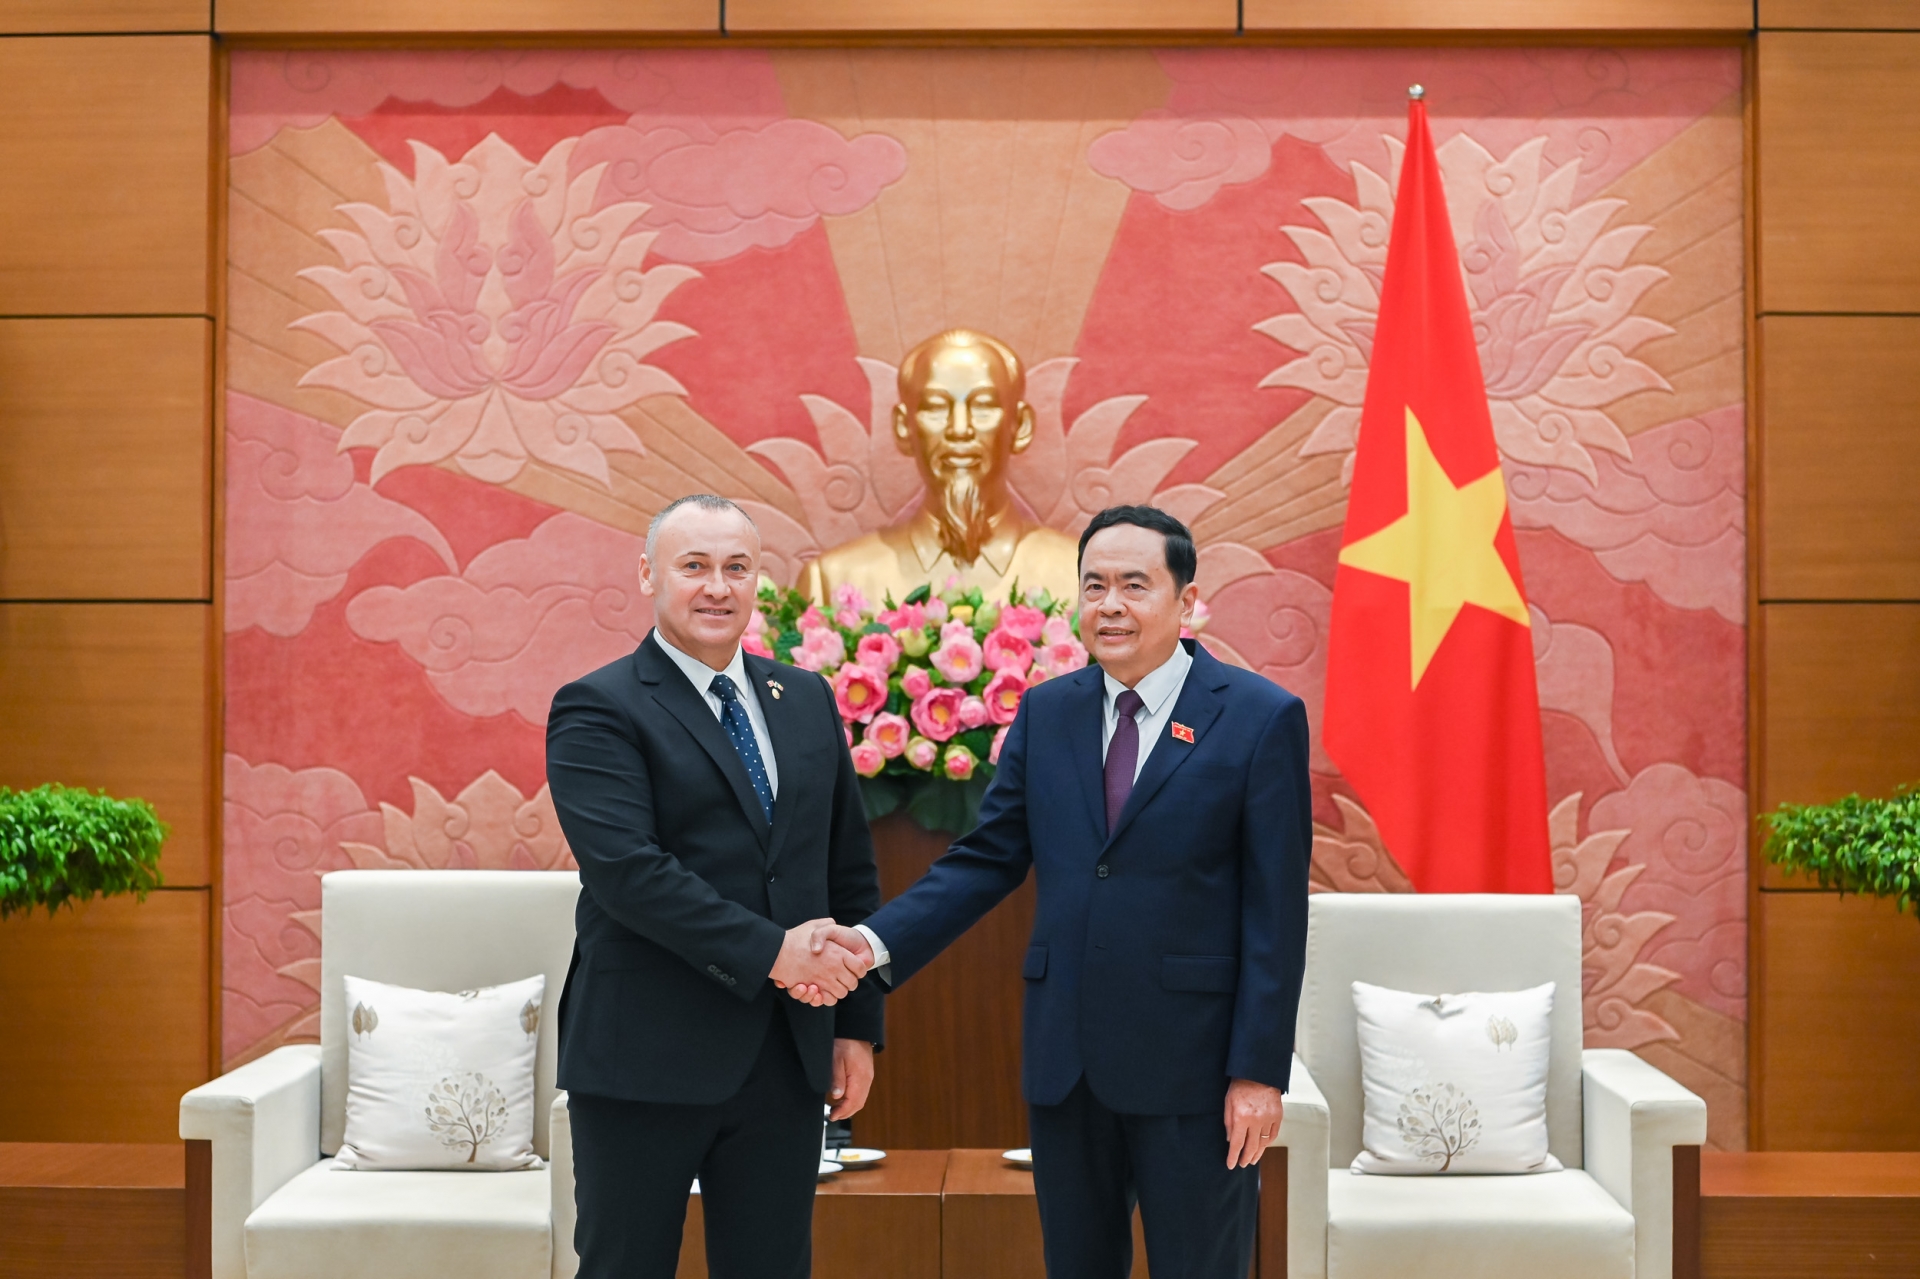 加强越南与罗马尼亚的友好合作关系。